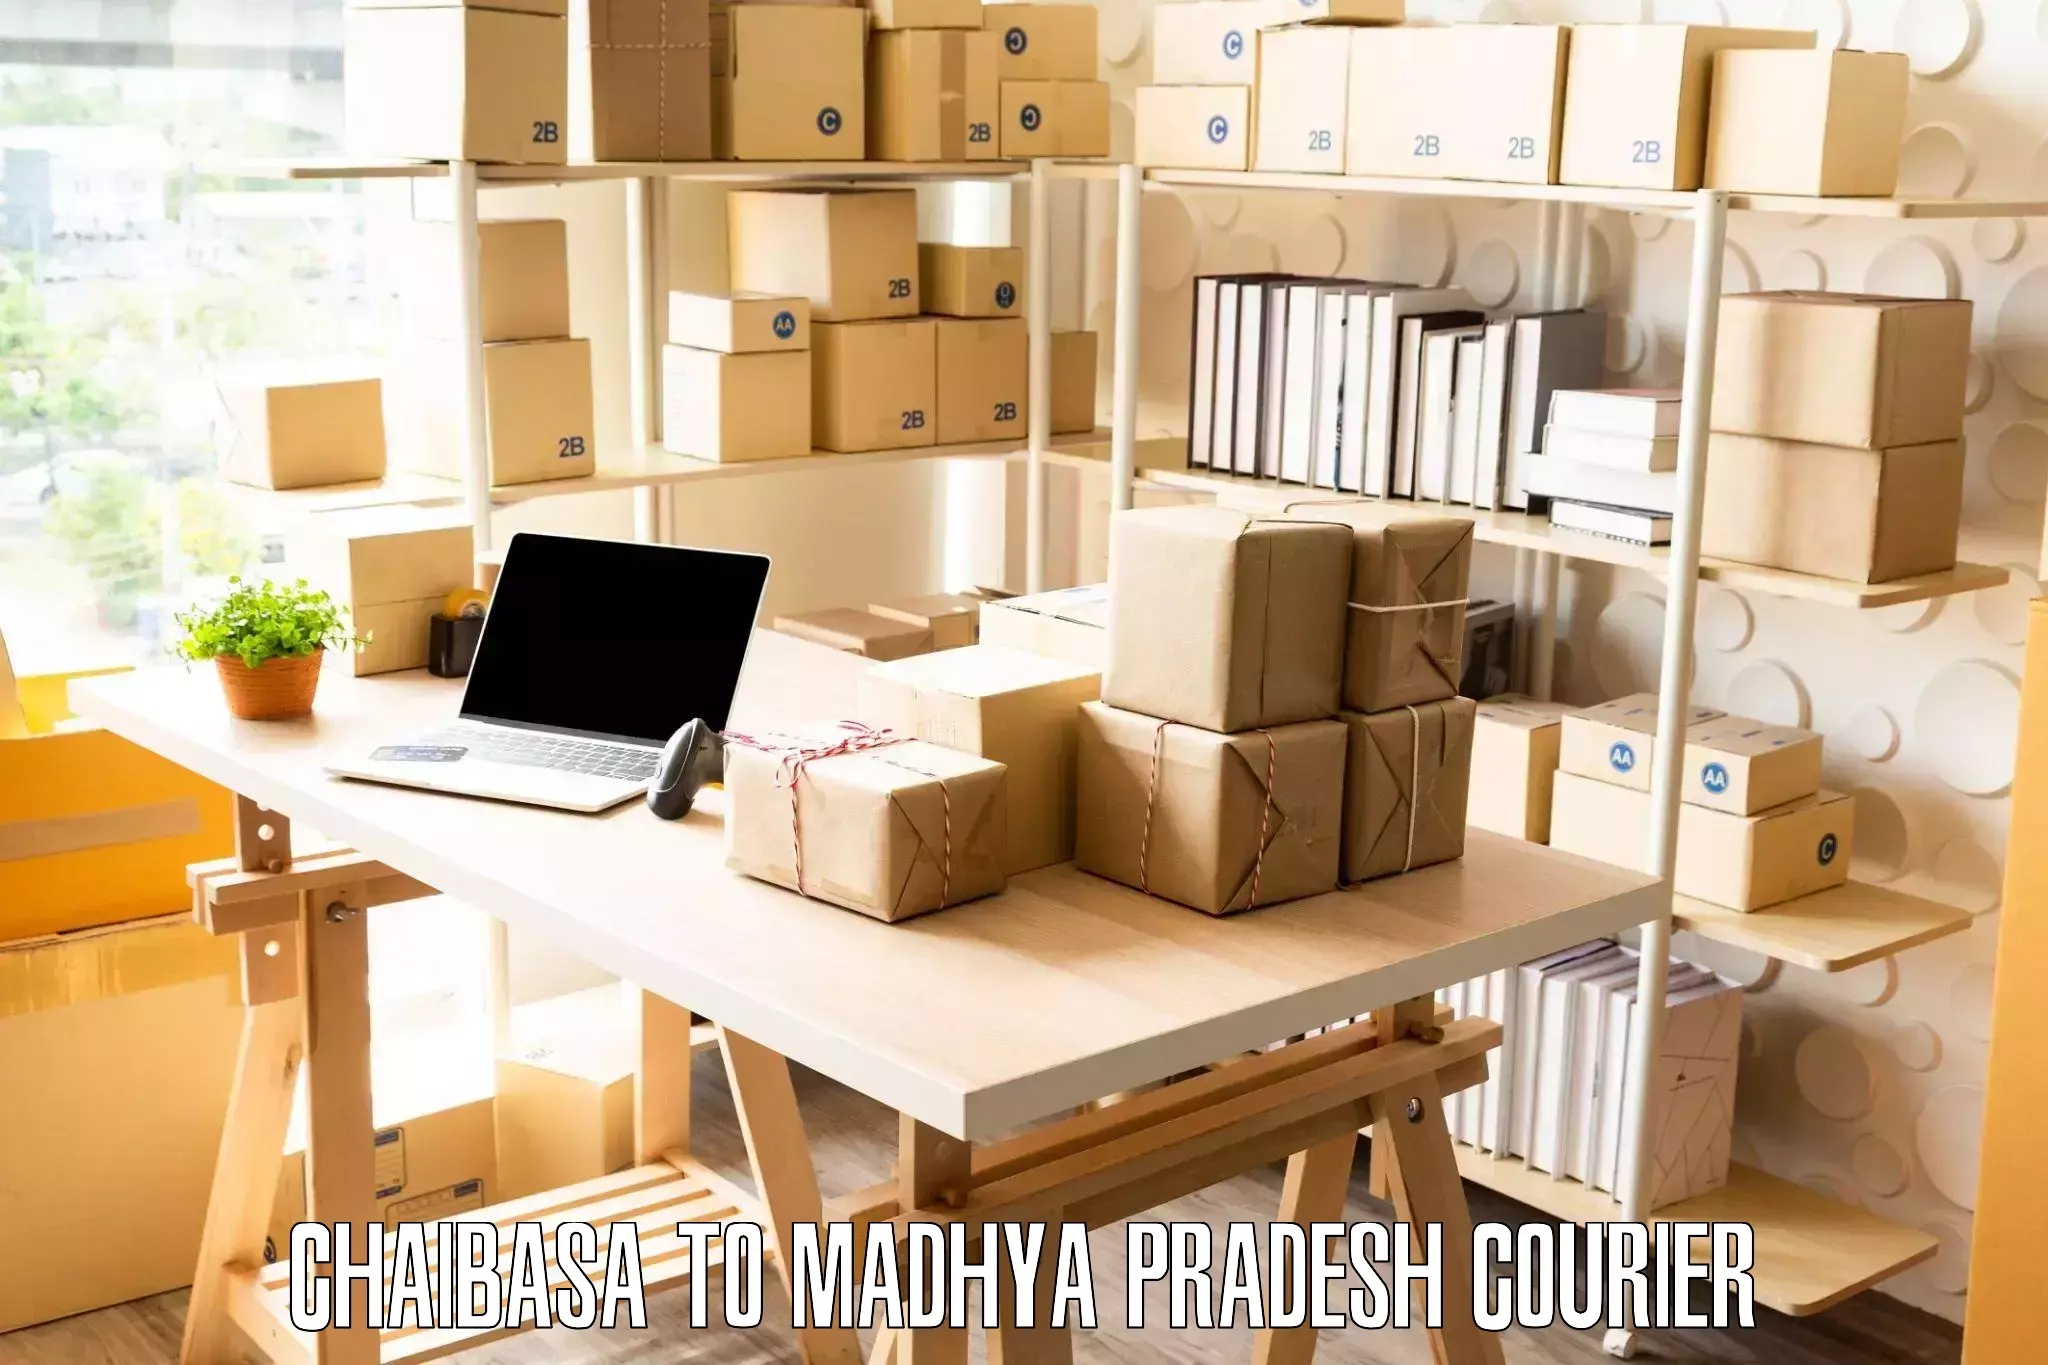 Moving and packing experts Chaibasa to Madhya Pradesh